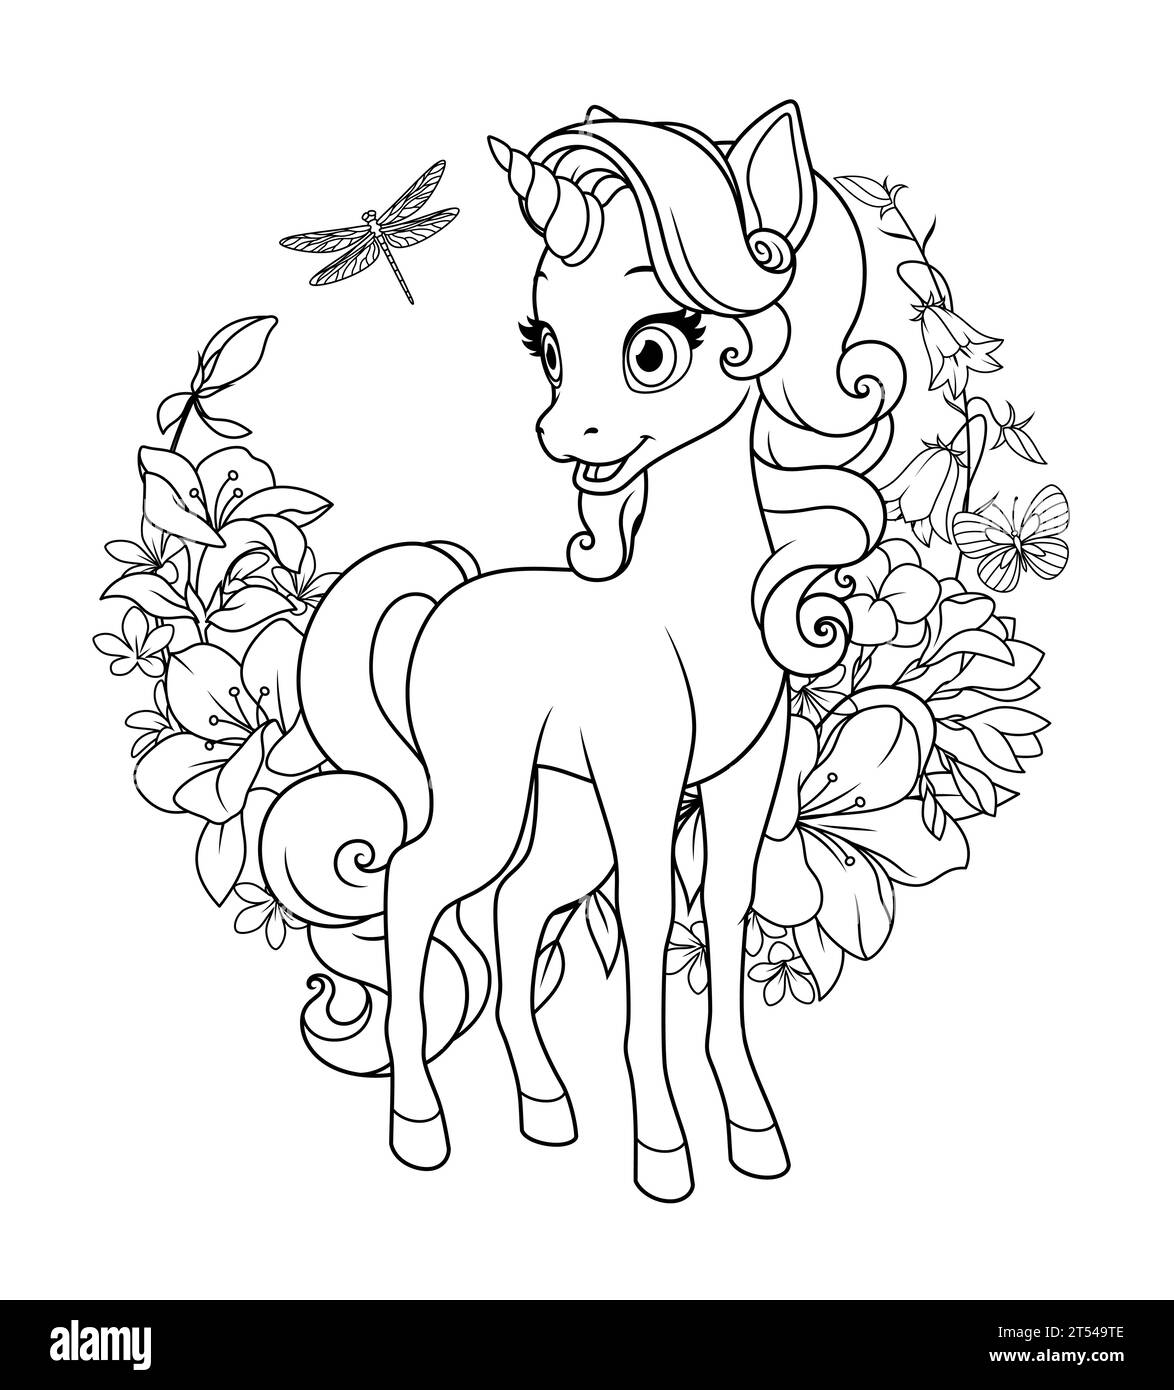 Un simpatico unicorno circondato da fiori. Illustrazione vettoriale in bianco e nero per la pagina da colorare. Illustrazione Vettoriale